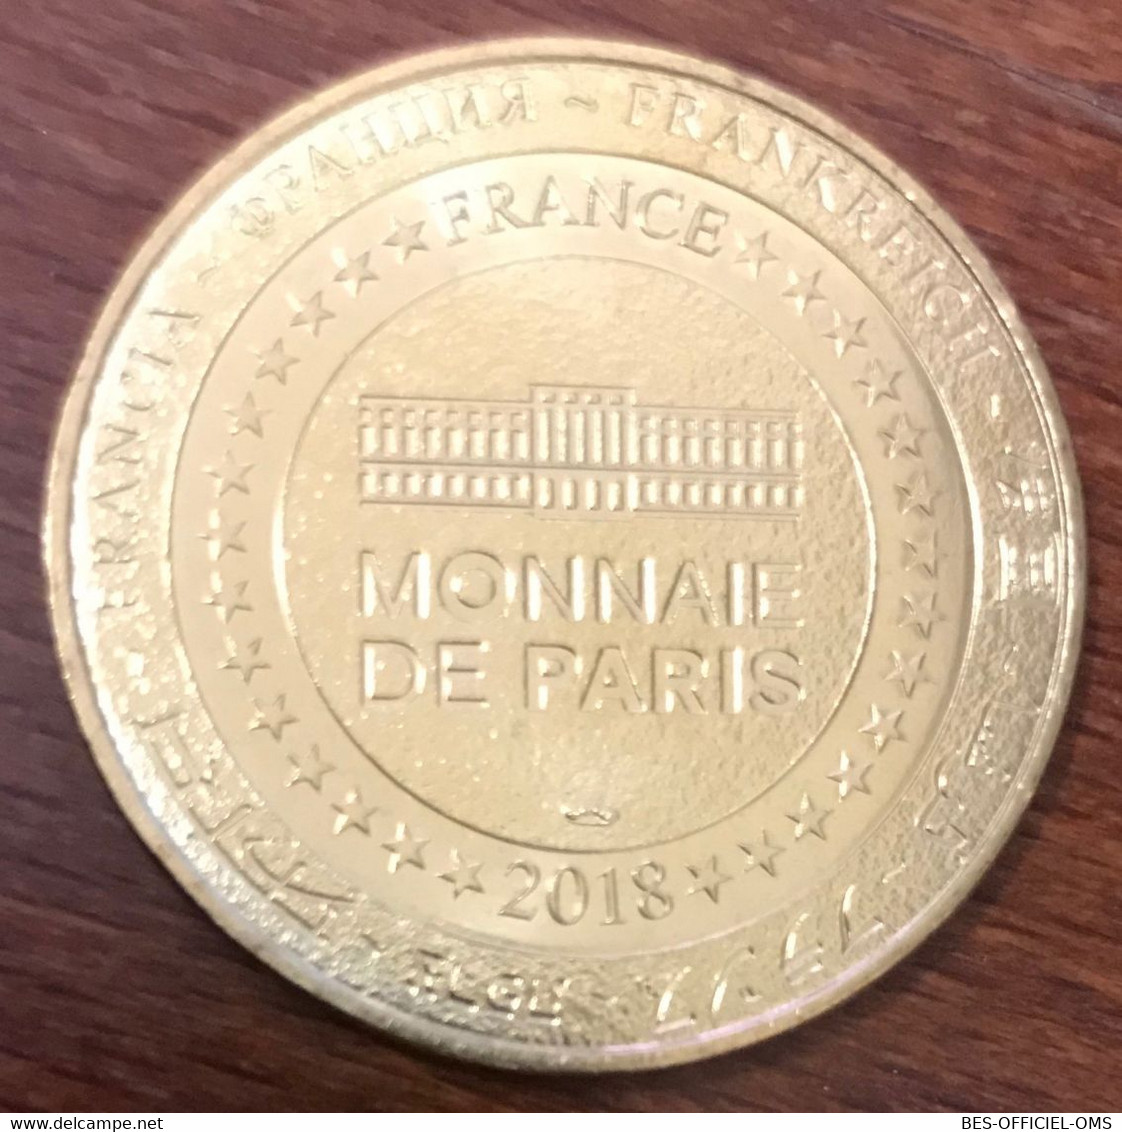 30 LE GRAU DU ROI SEAQUARIUM TORTUE MARINE MDP 2018 MEDAILLE MONNAIE DE PARIS JETON TOURISTIQUE MEDALS COINS TOKENS - 2018